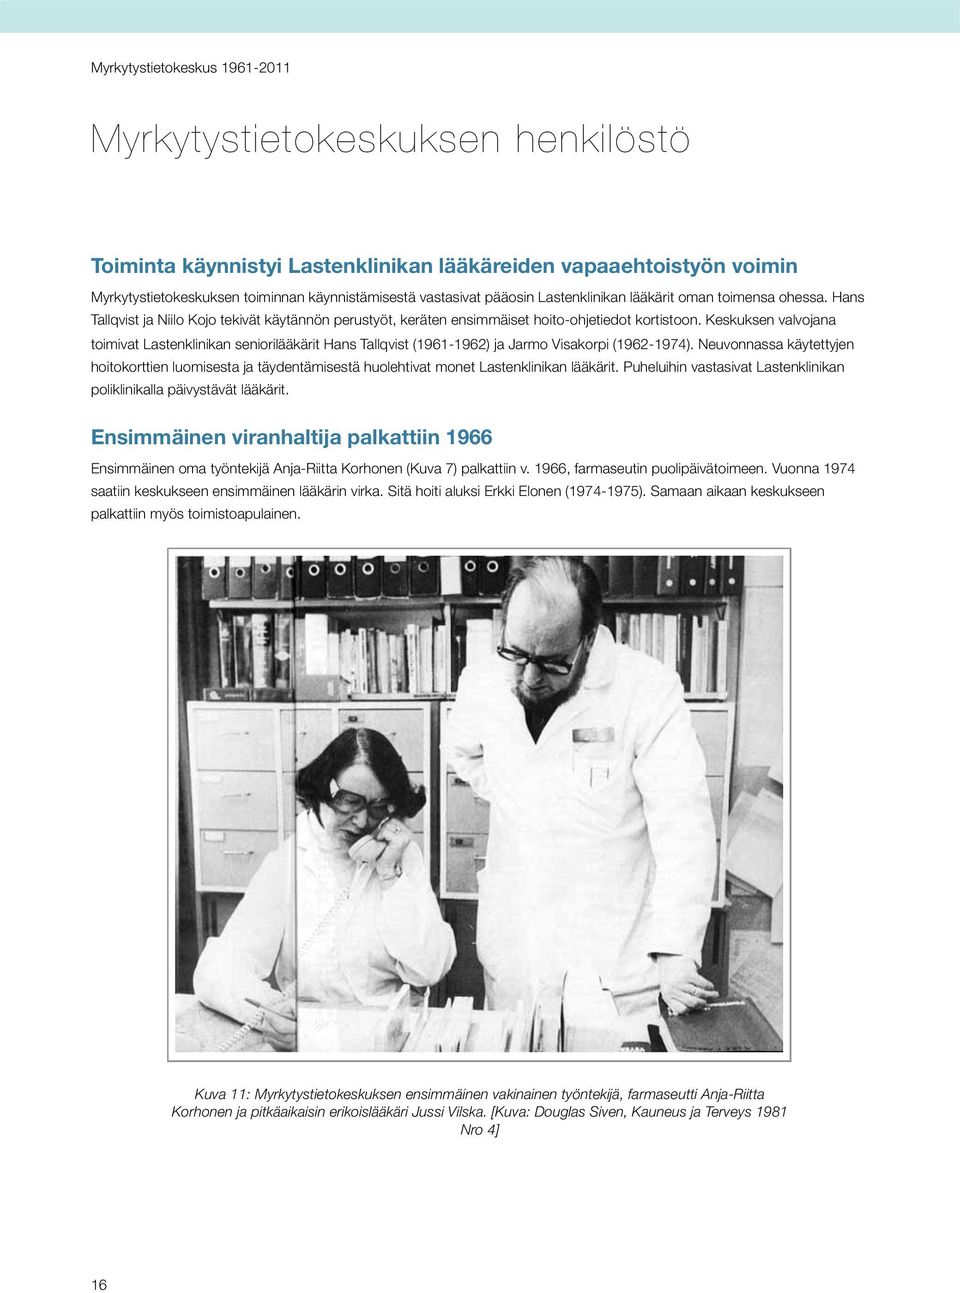 Keskuksen valvojana toimivat Lastenklinikan seniorilääkärit Hans Tallqvist (1961-1962) ja Jarmo Visakorpi (1962-1974).